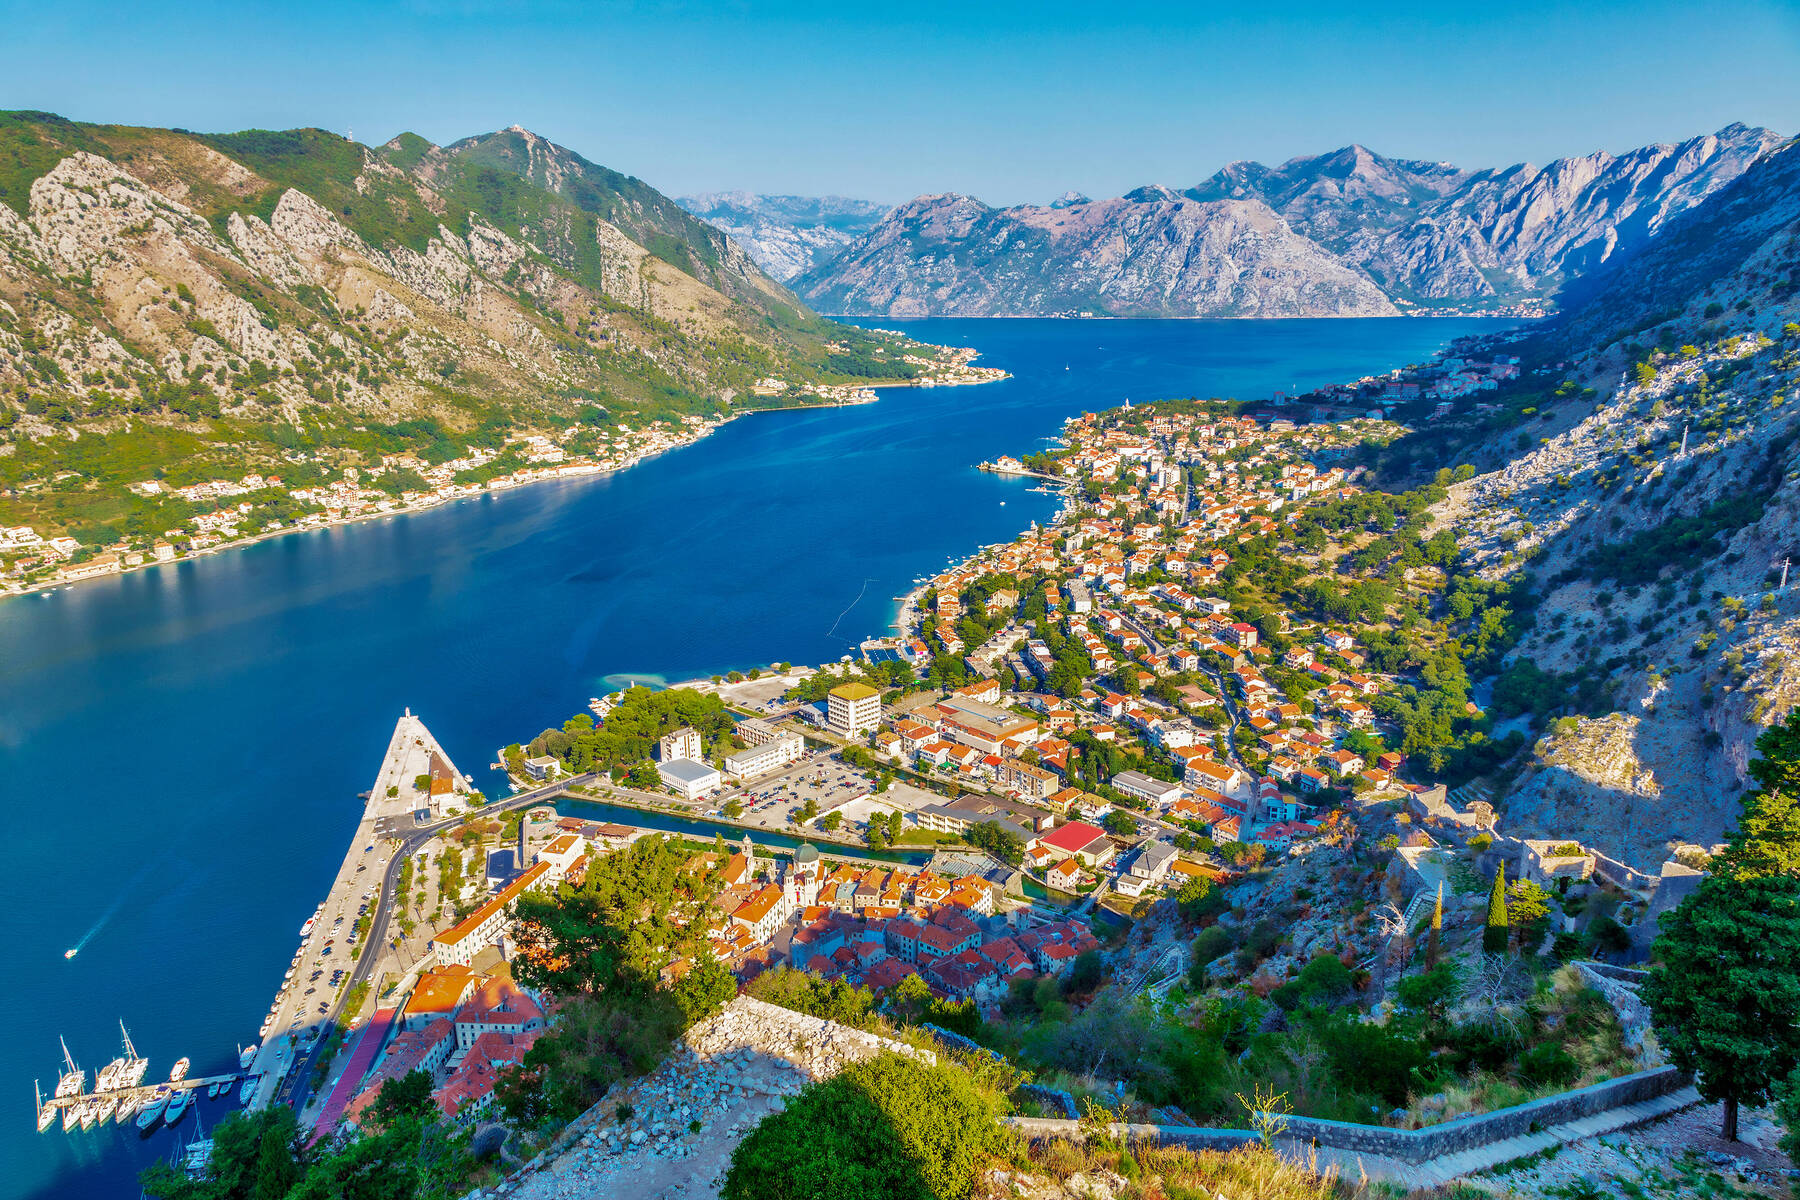 Kotor, UNESCO World Heritage on the Adriatic Sea 